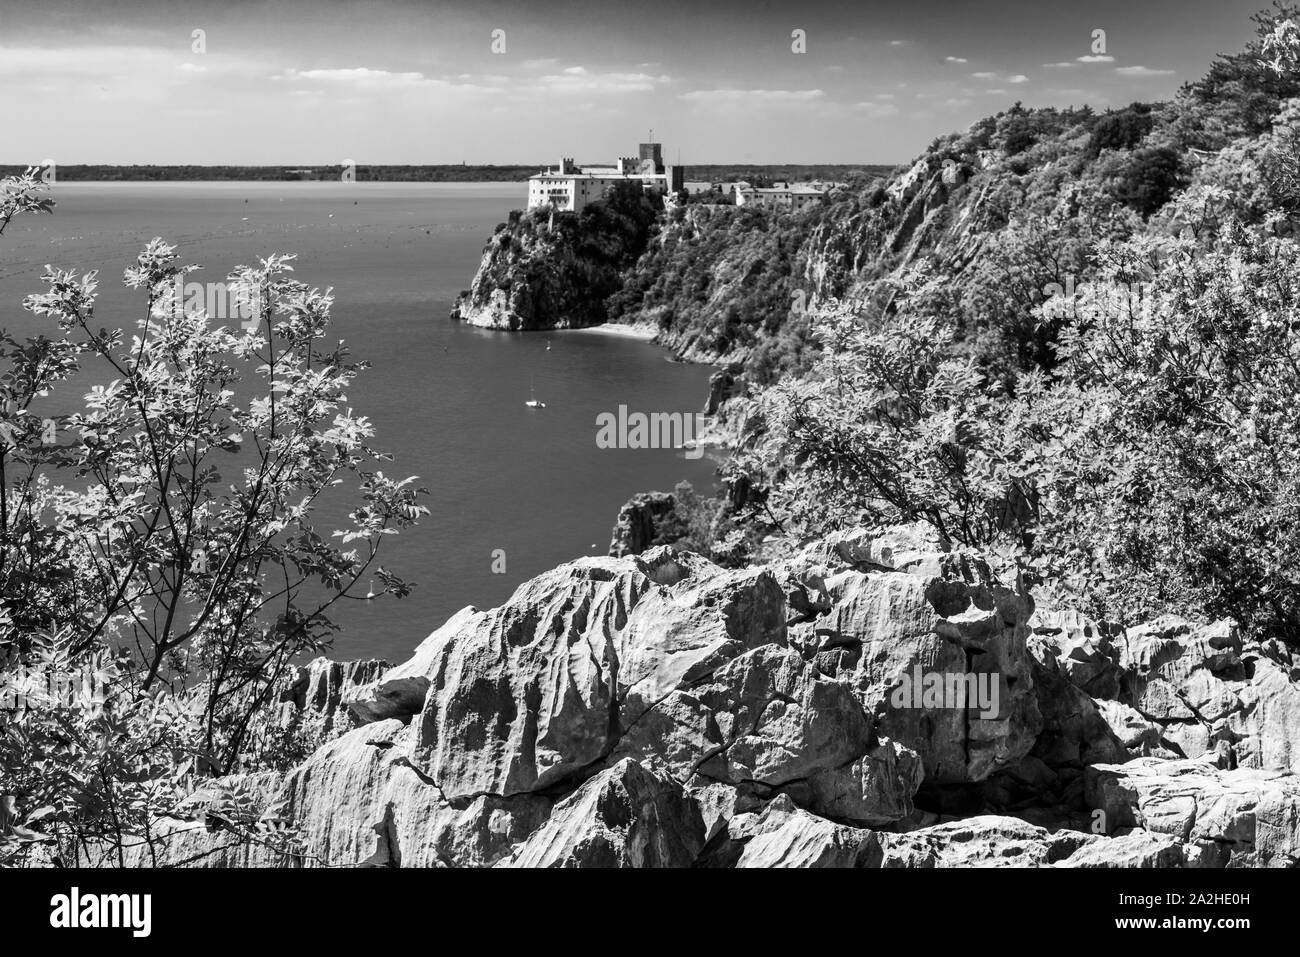 Golfe de Trieste. Hautes Falaises Entre bateaux, les roches karstiques et anciens châteaux. Noir et blanc. Duino. Italie Banque D'Images